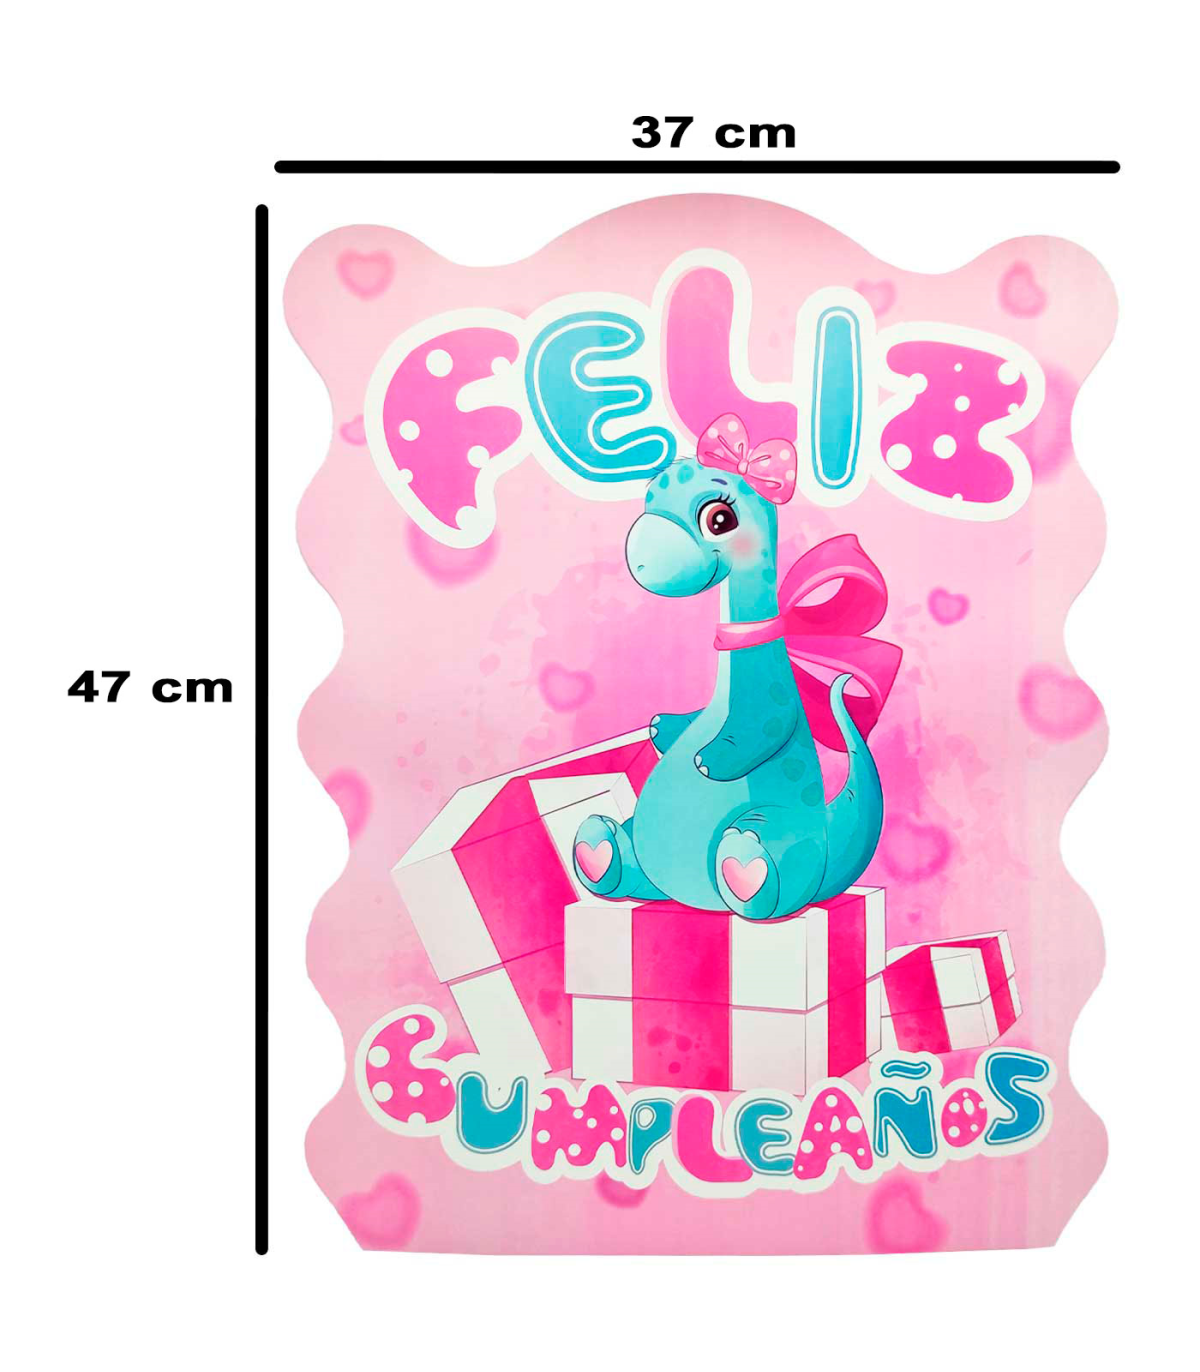 Tradineur - Piñata de dinosaurio rosa, feliz cumpleaños, cartón